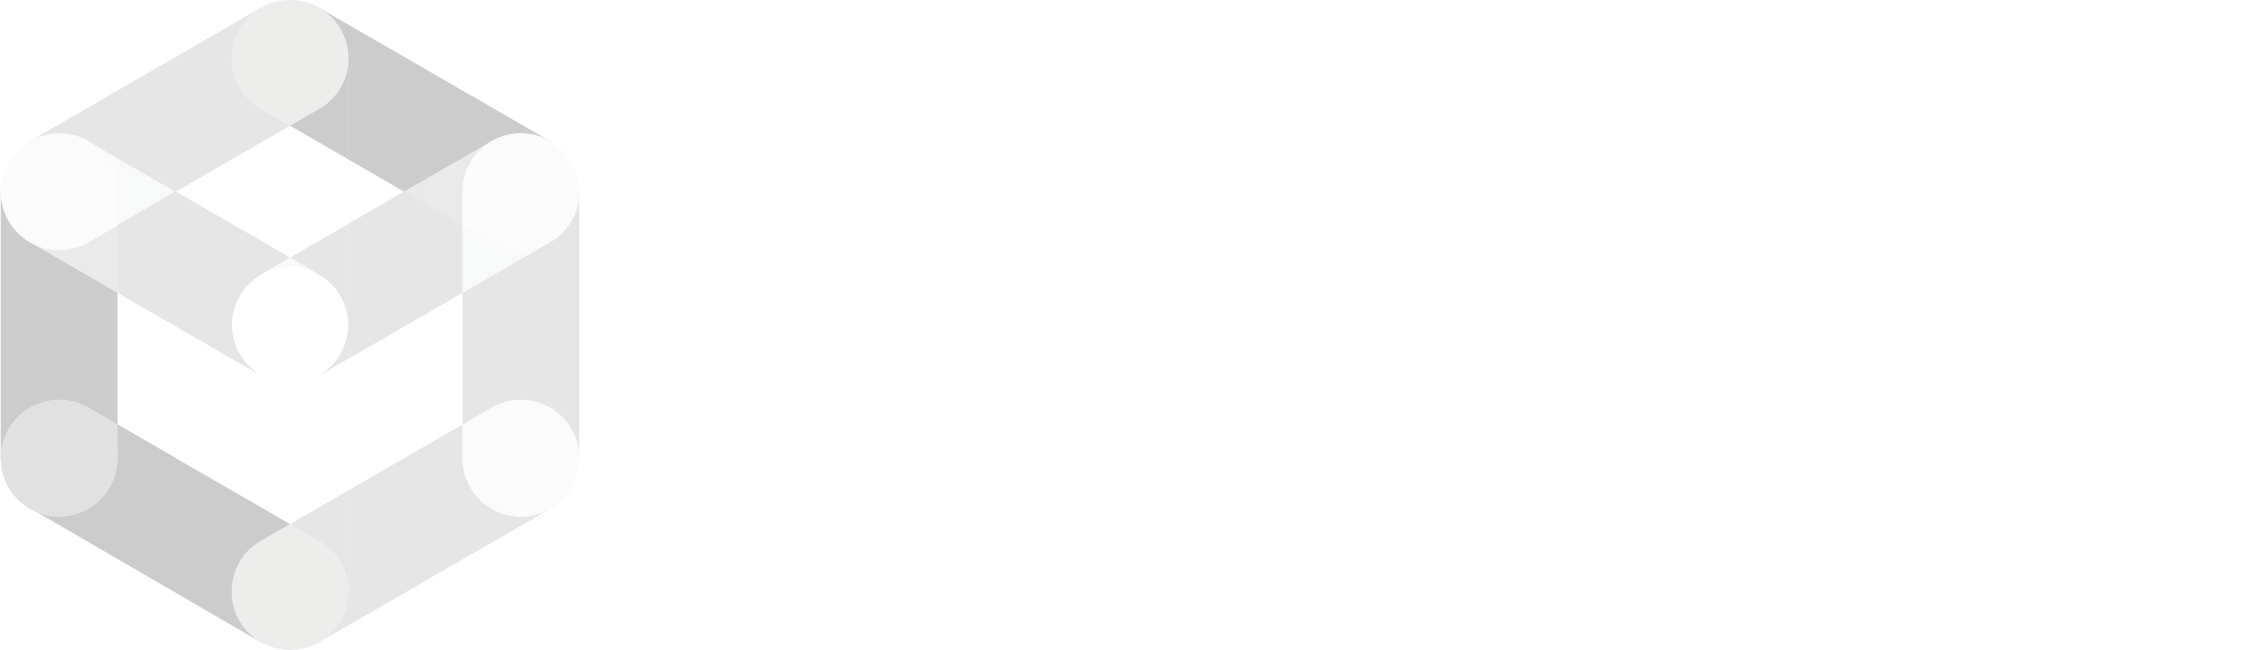 Safelink Logo - MONO